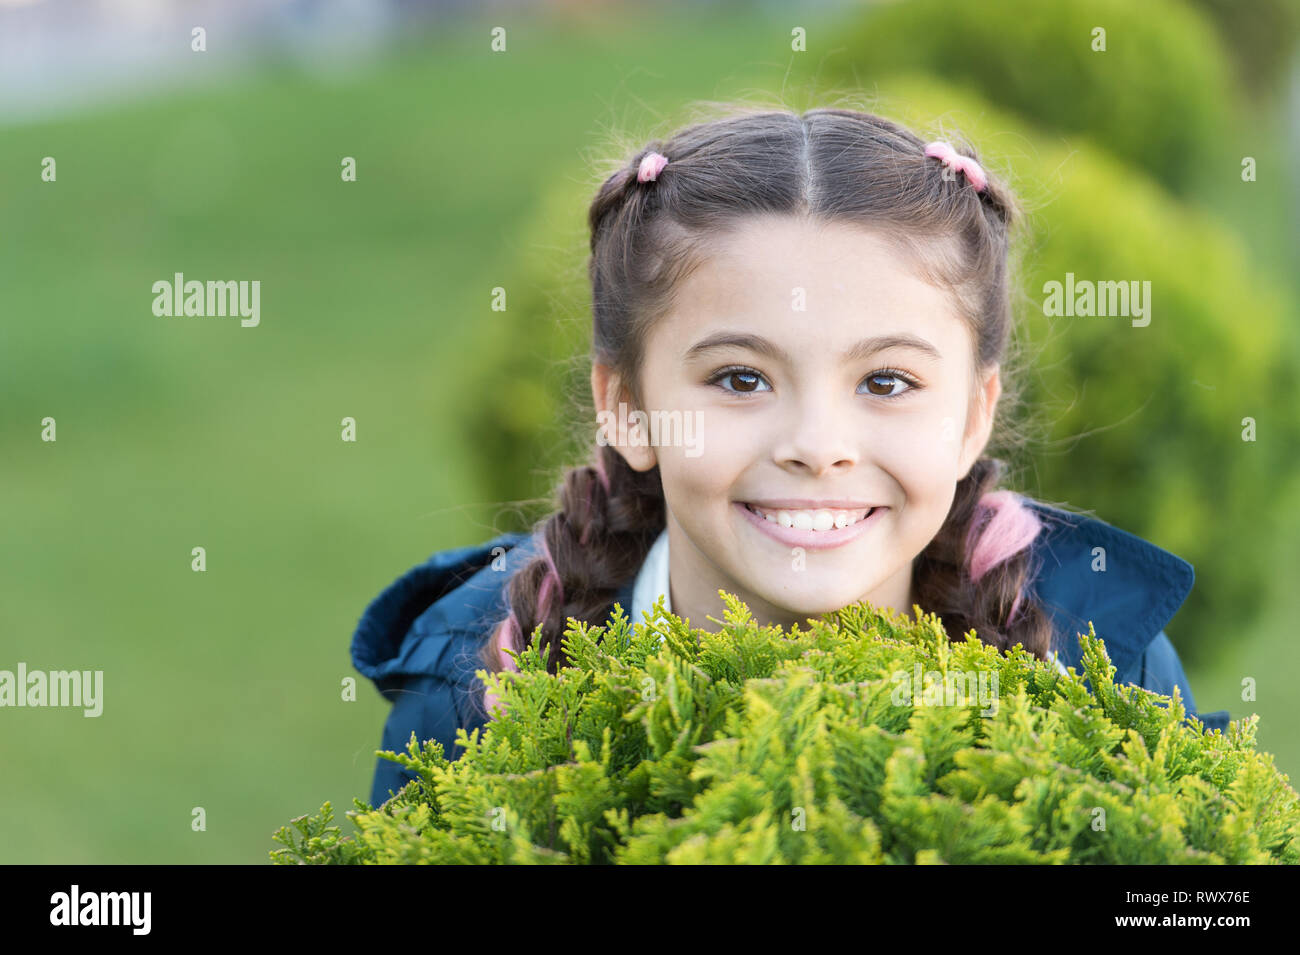 Mädchen süß lächelnd Kid grünes Gras Hintergrund. Gesunde emotionale glückliches Kind Entspannung im Freien. Was macht Kinder glücklich. Mädchen Zöpfe Frisur entspannen. Gerne ausblenden Spiel im Freien. Ausblenden und Spaß suchen. Stockfoto